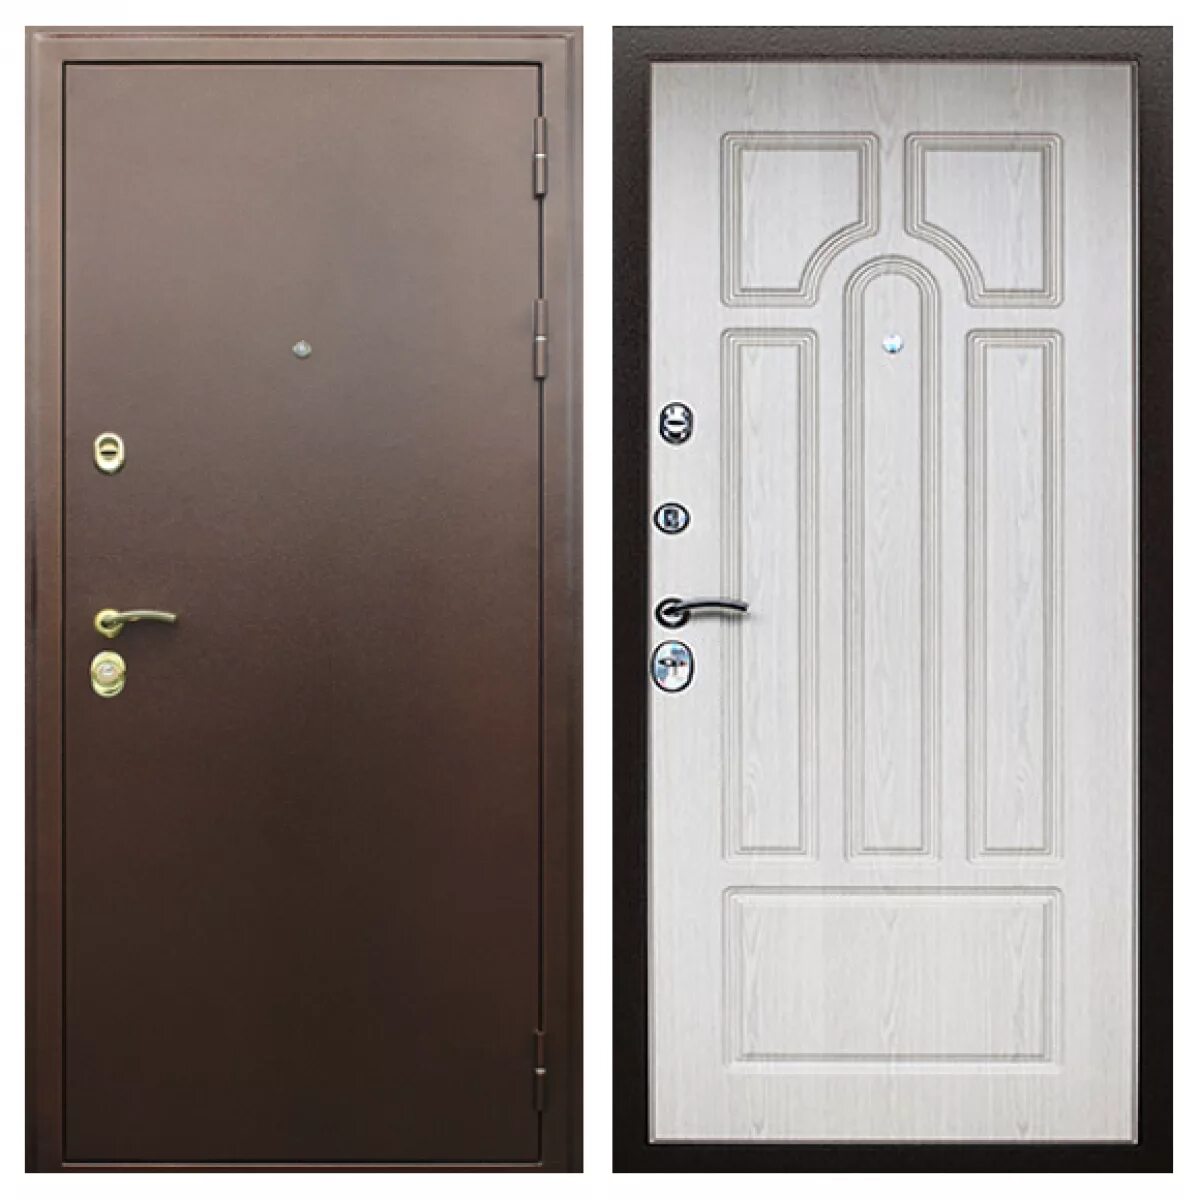 Купить двери входные металлические недорого в москве. Дверь металлическая входная 210x89. Дверь входная металлическая 960х2050 размер. Дверь входная металлическая 860х2050. Дверь уличная металлическая.